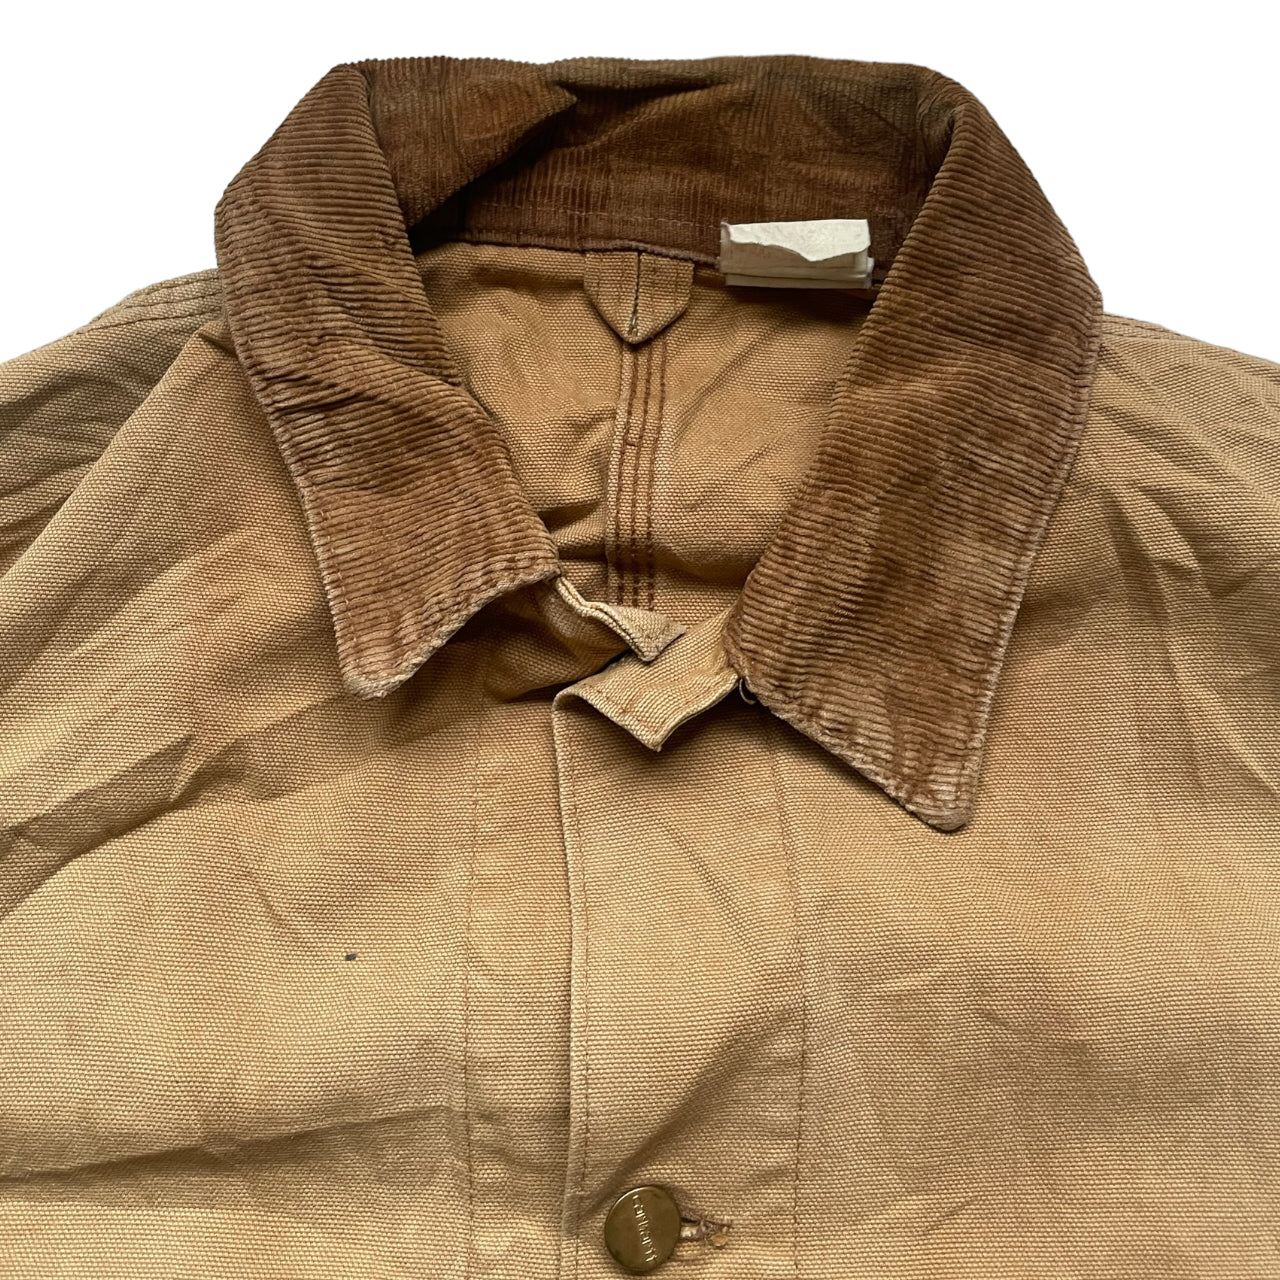 Carhartt Vintage Detroit Jacket Workwear L Size Camel A_43